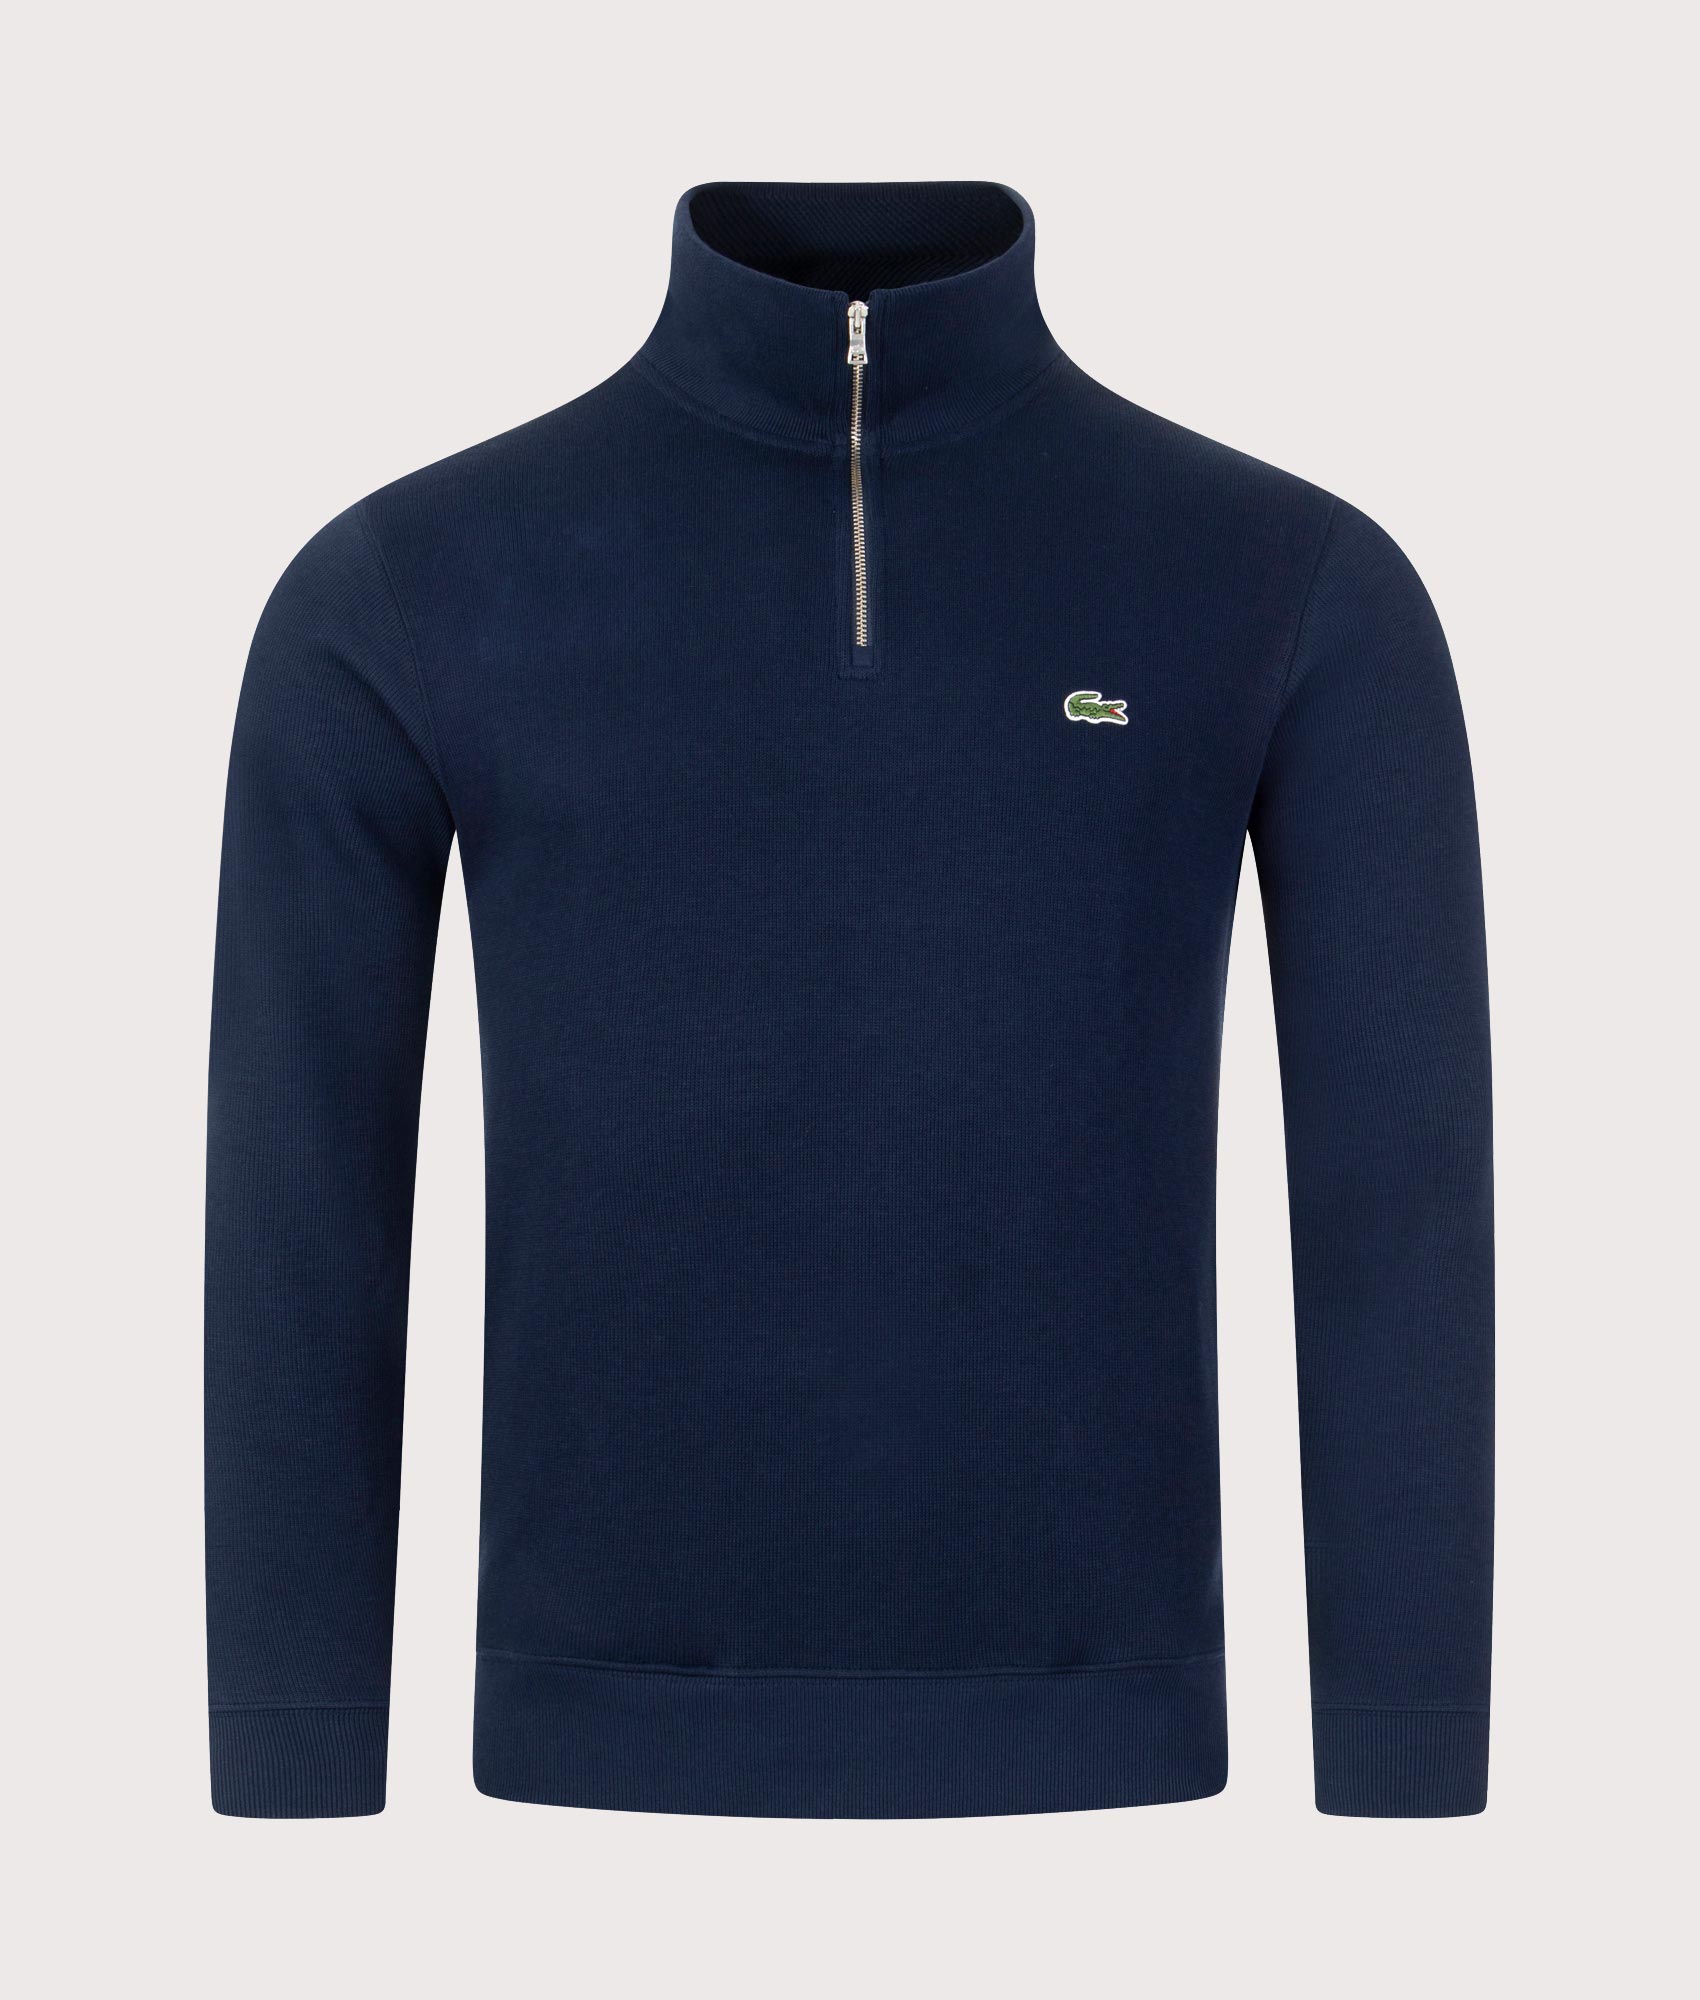 Lacoste Mens Quarter Zip Croc Logo Sweatshirt - Colour: 166 Navy - Size: 5/L